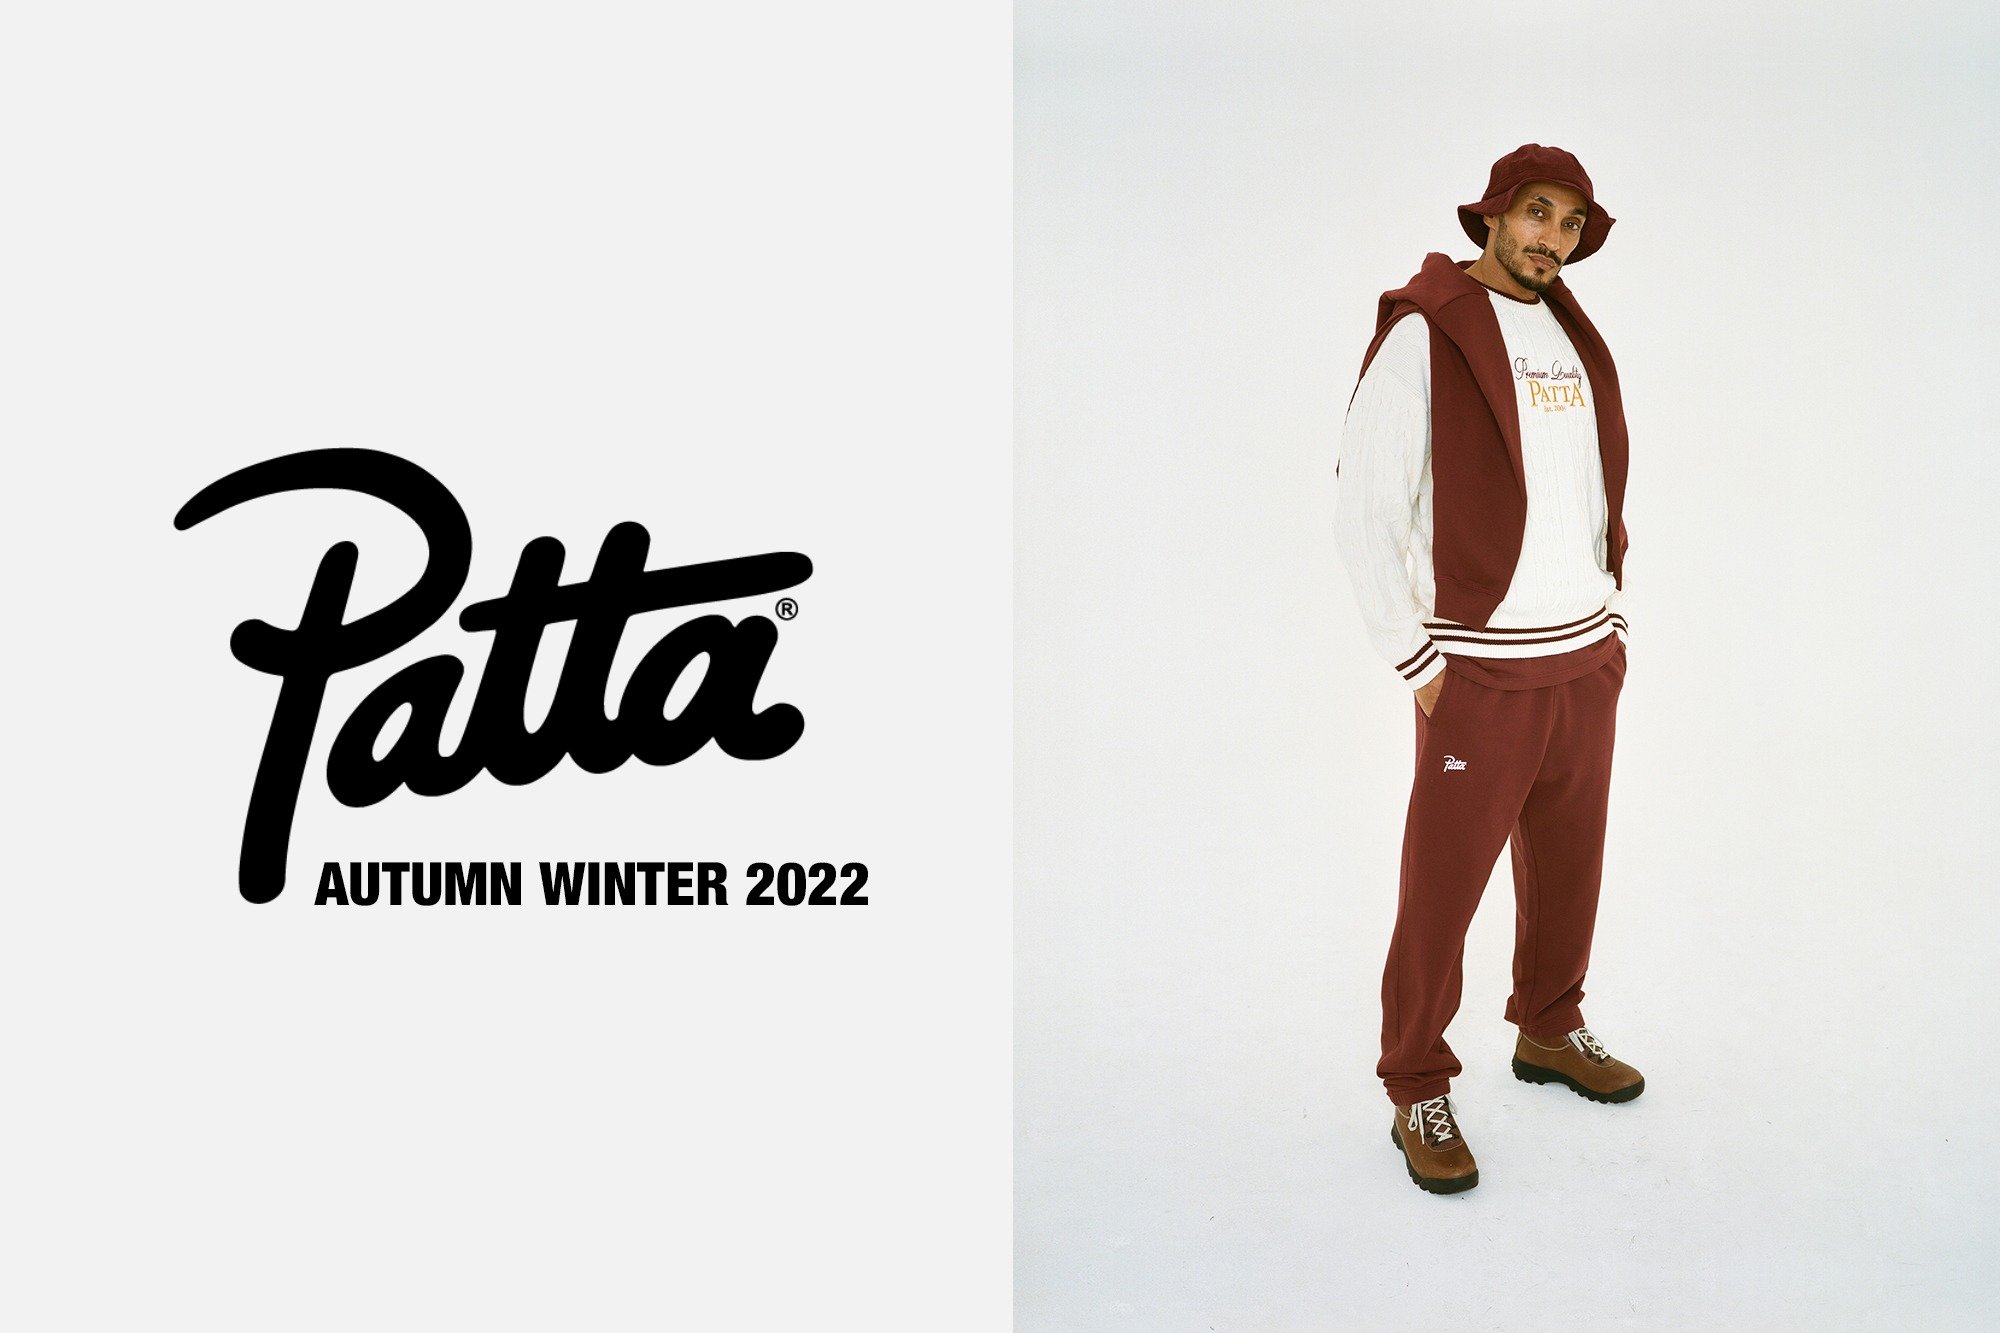 Autumn Winter 2022 Basics